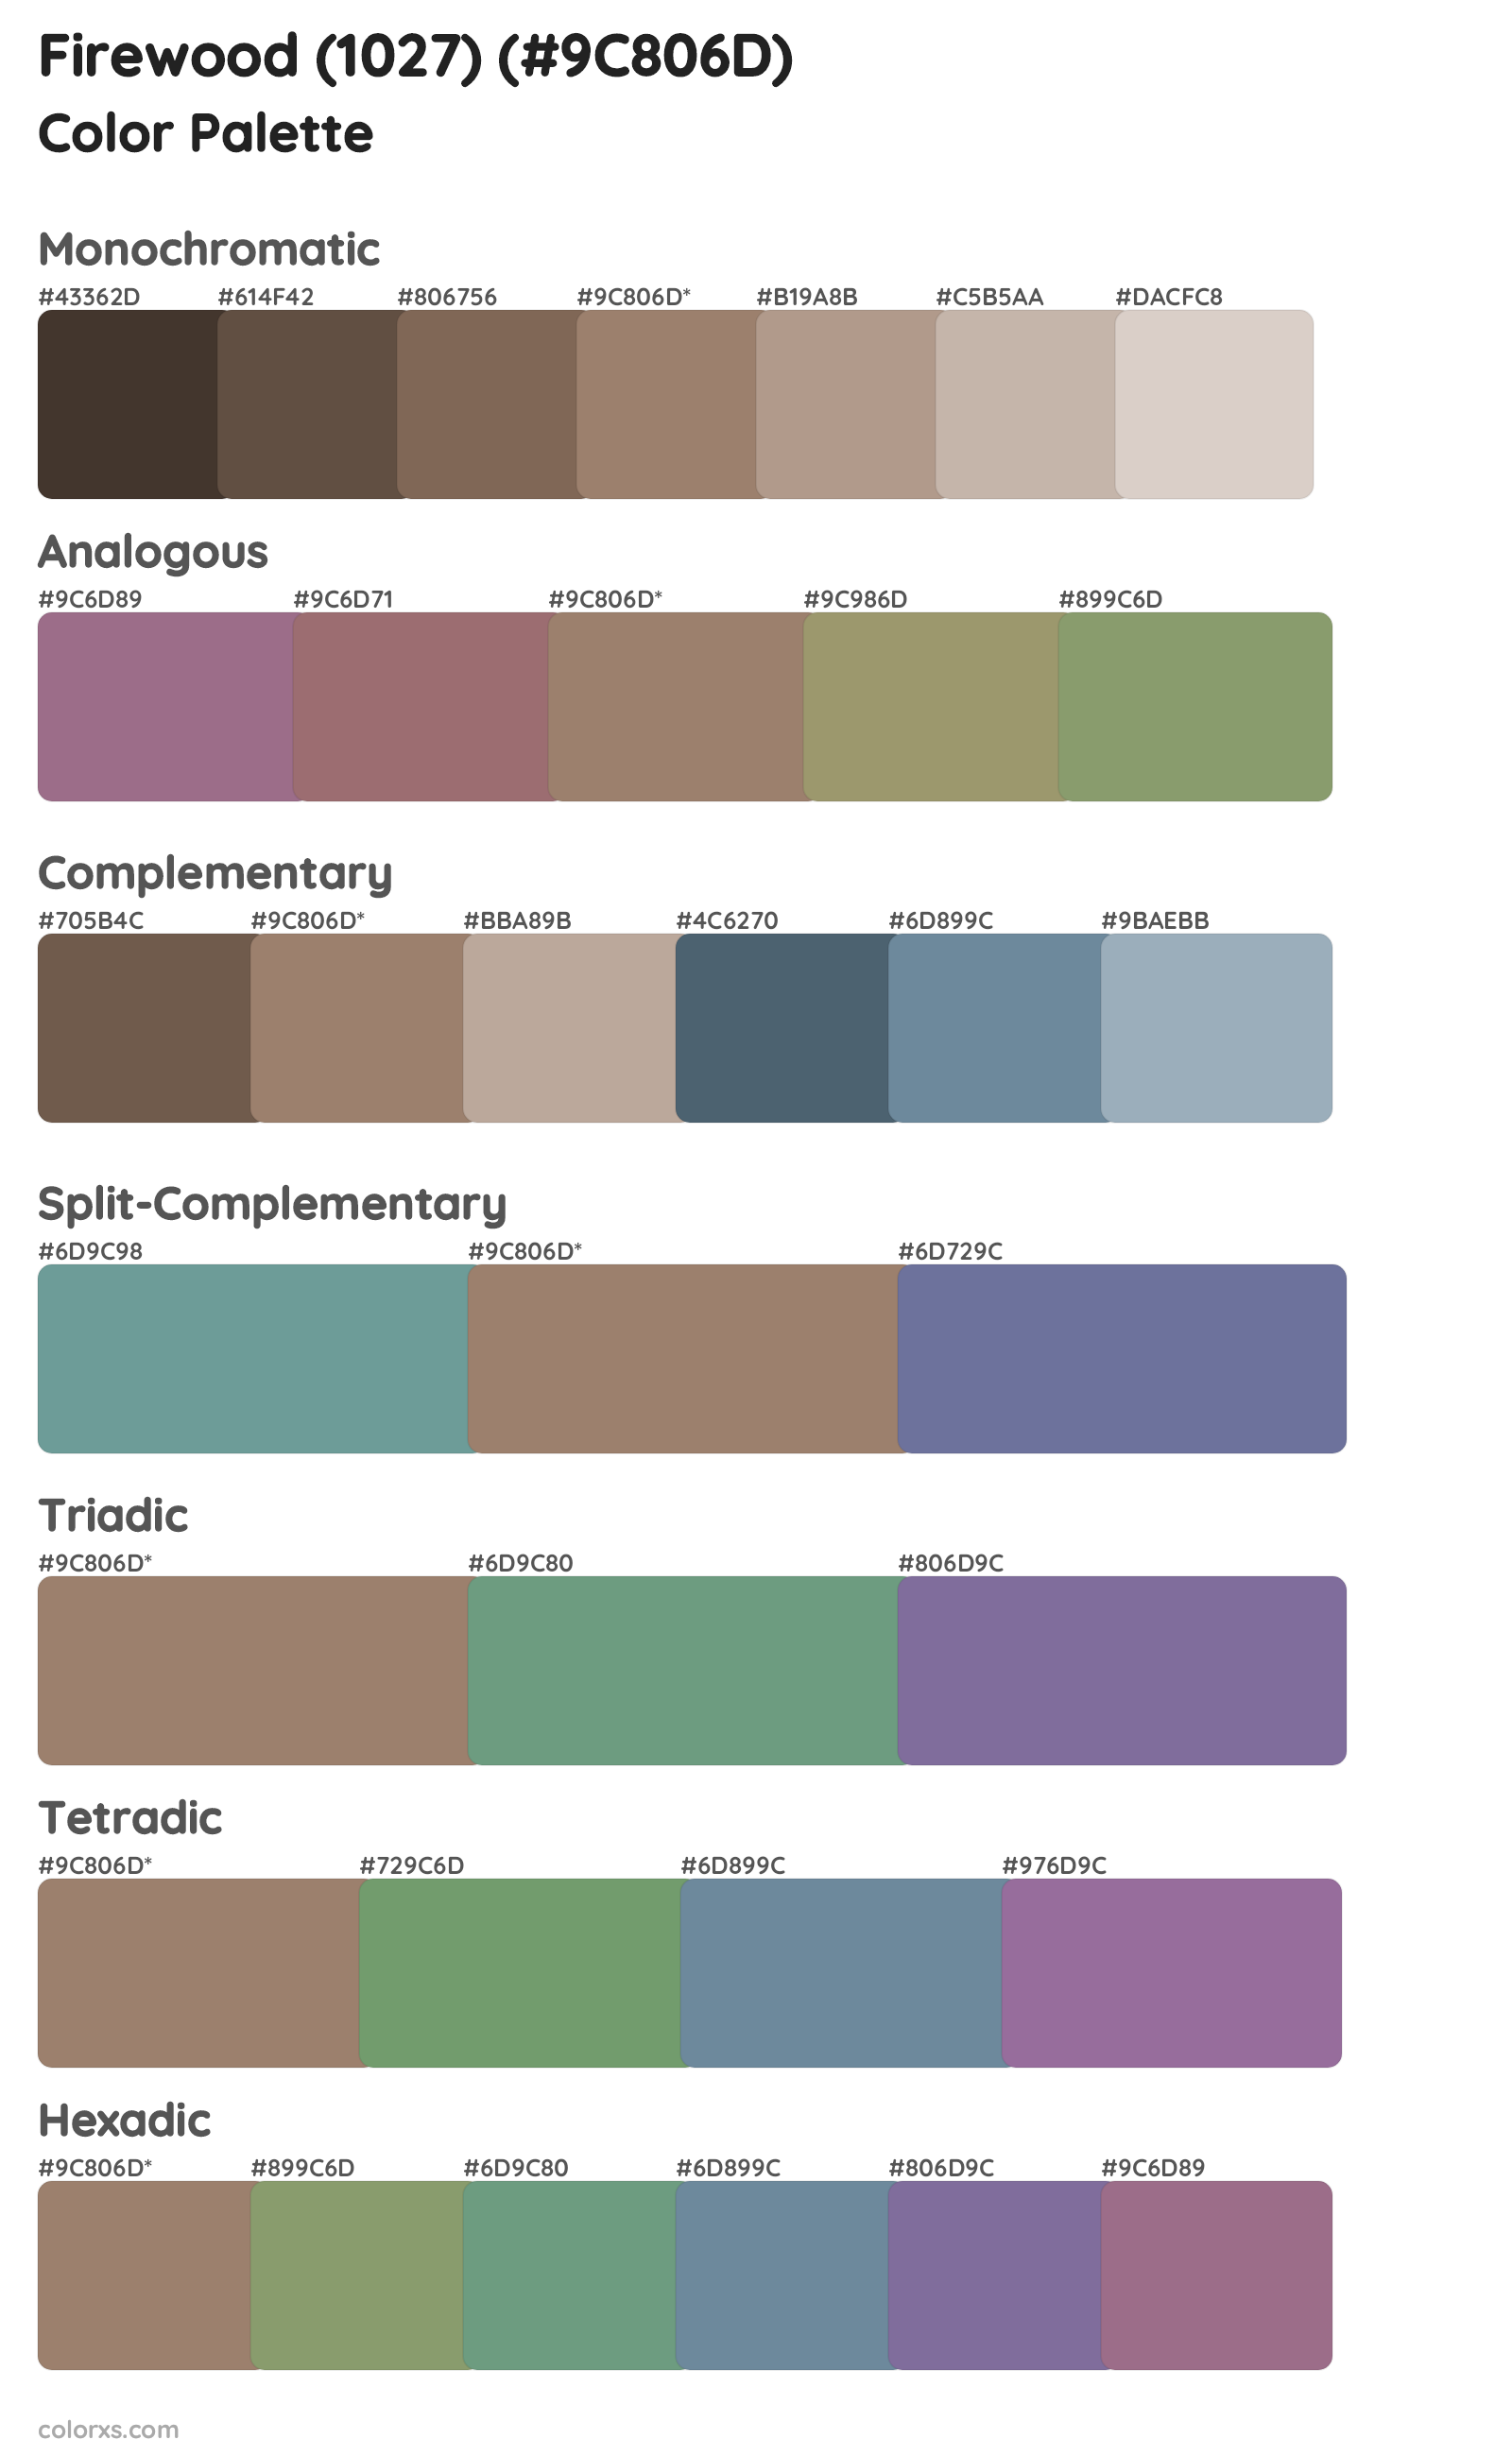 Firewood (1027) Color Scheme Palettes